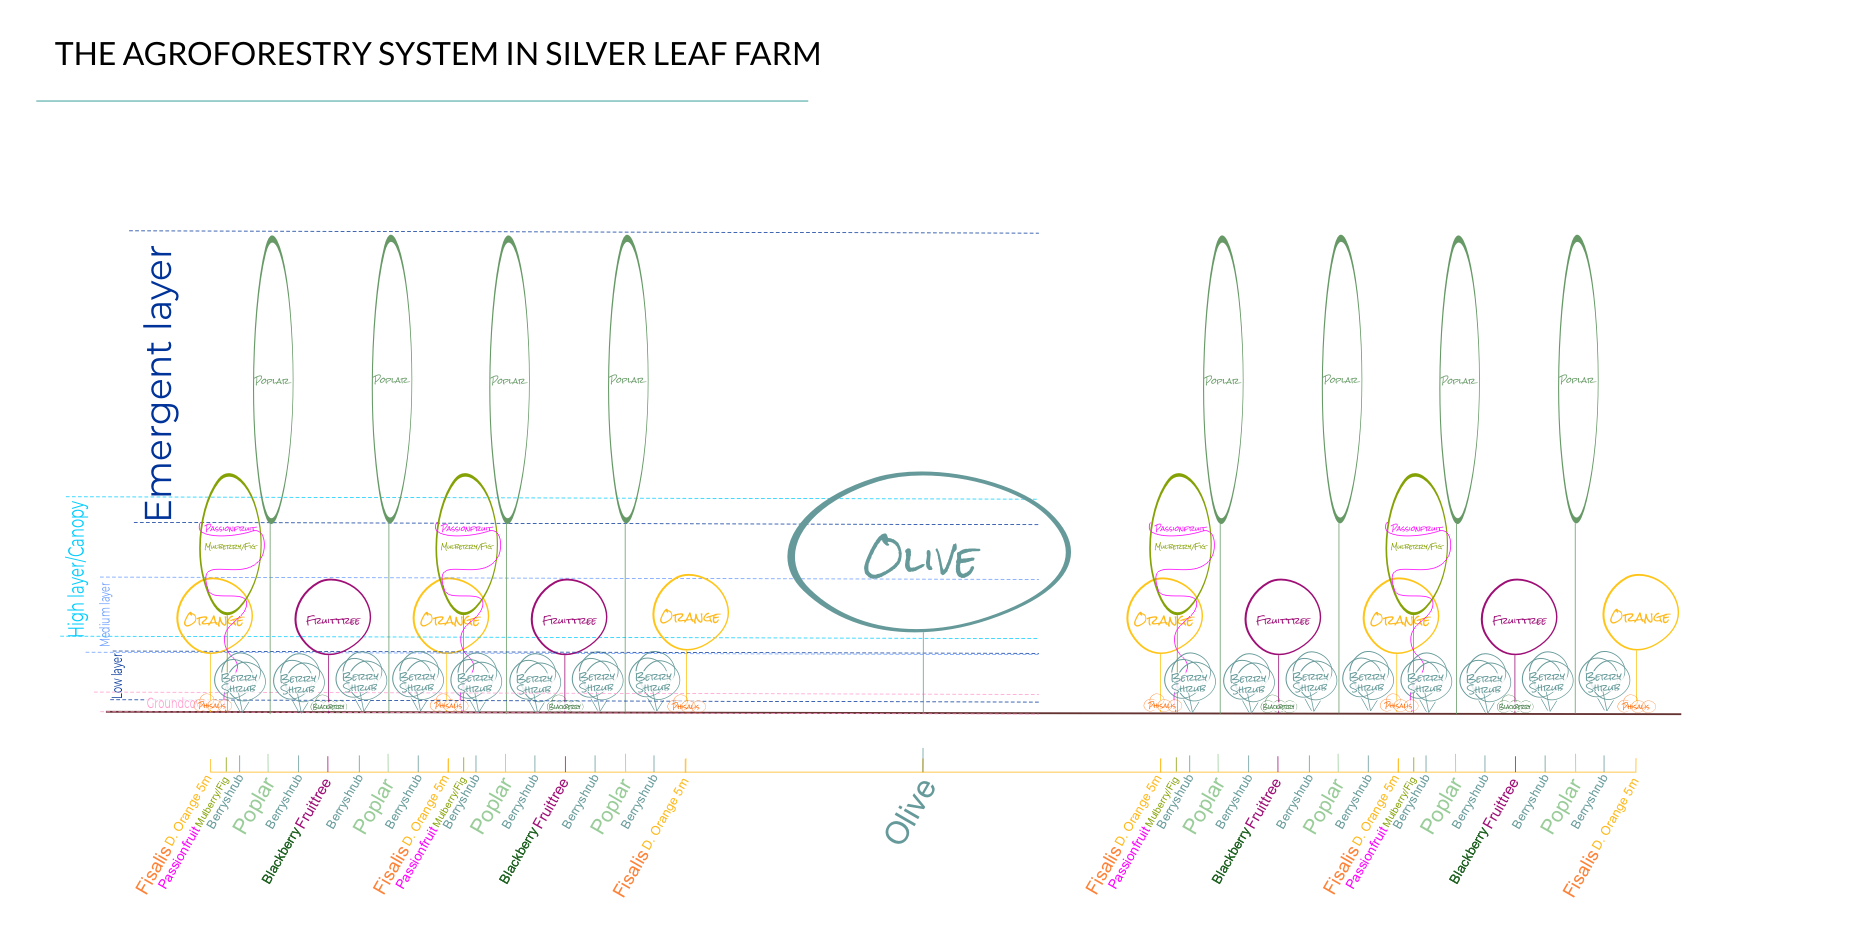 Le système agroforestier au sein de la ferme Silver Leaf